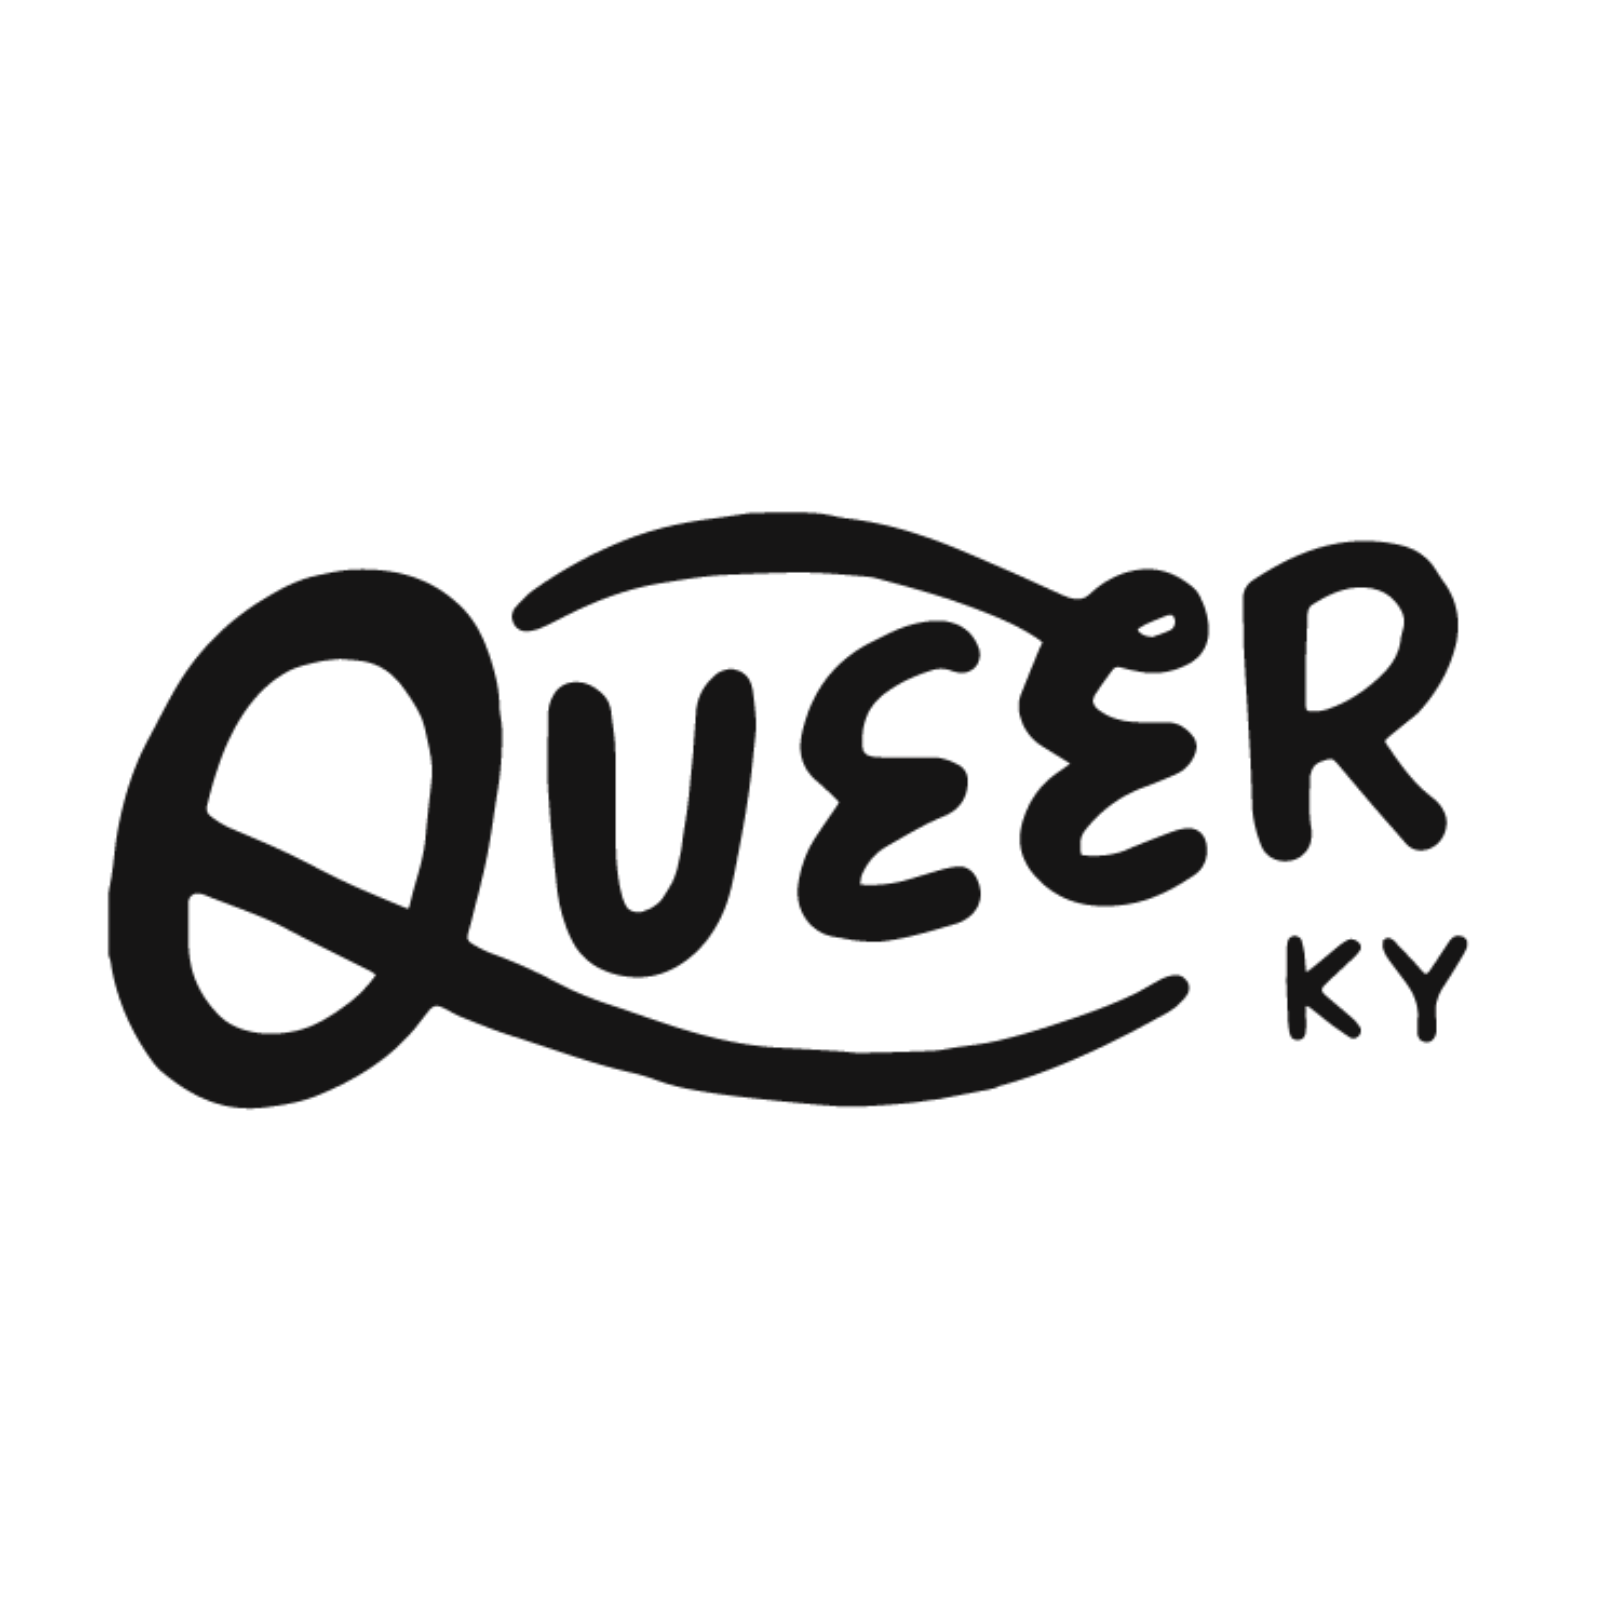 Queer Kentucky